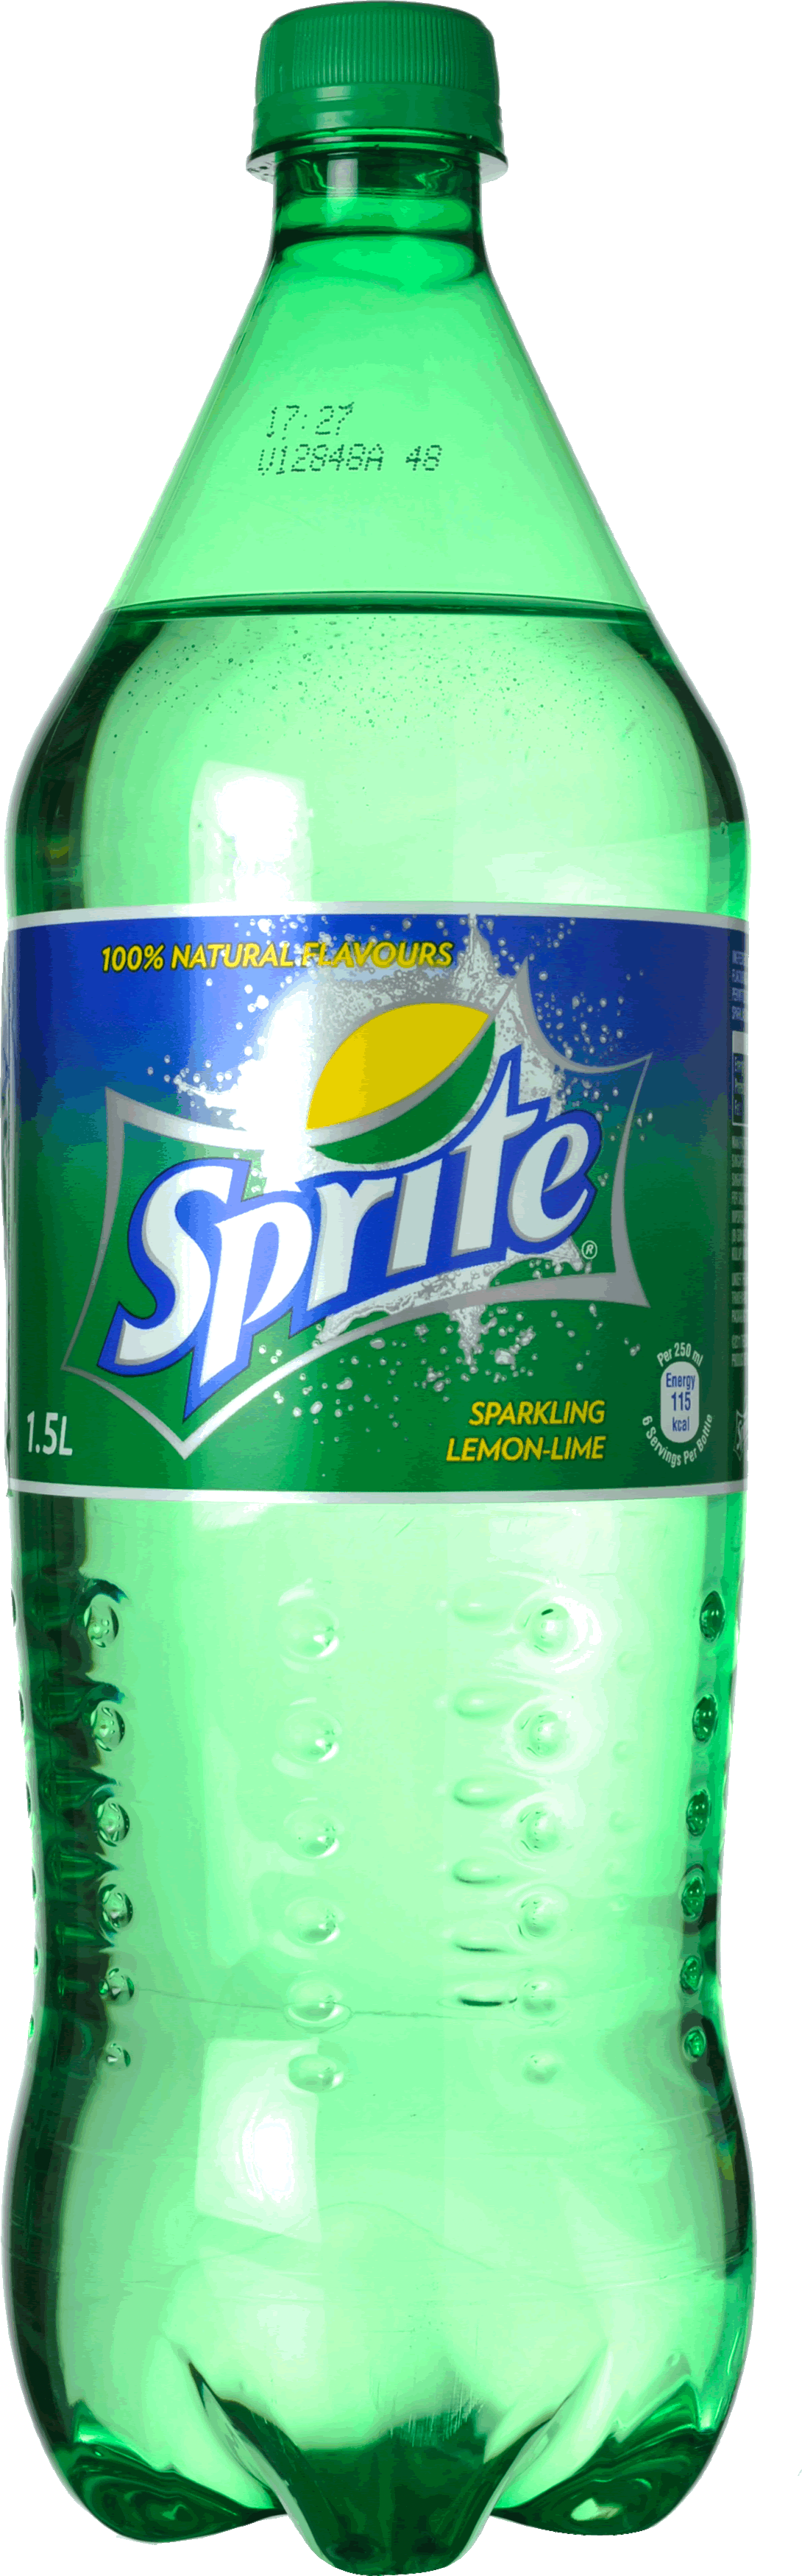 Sprite Bottle